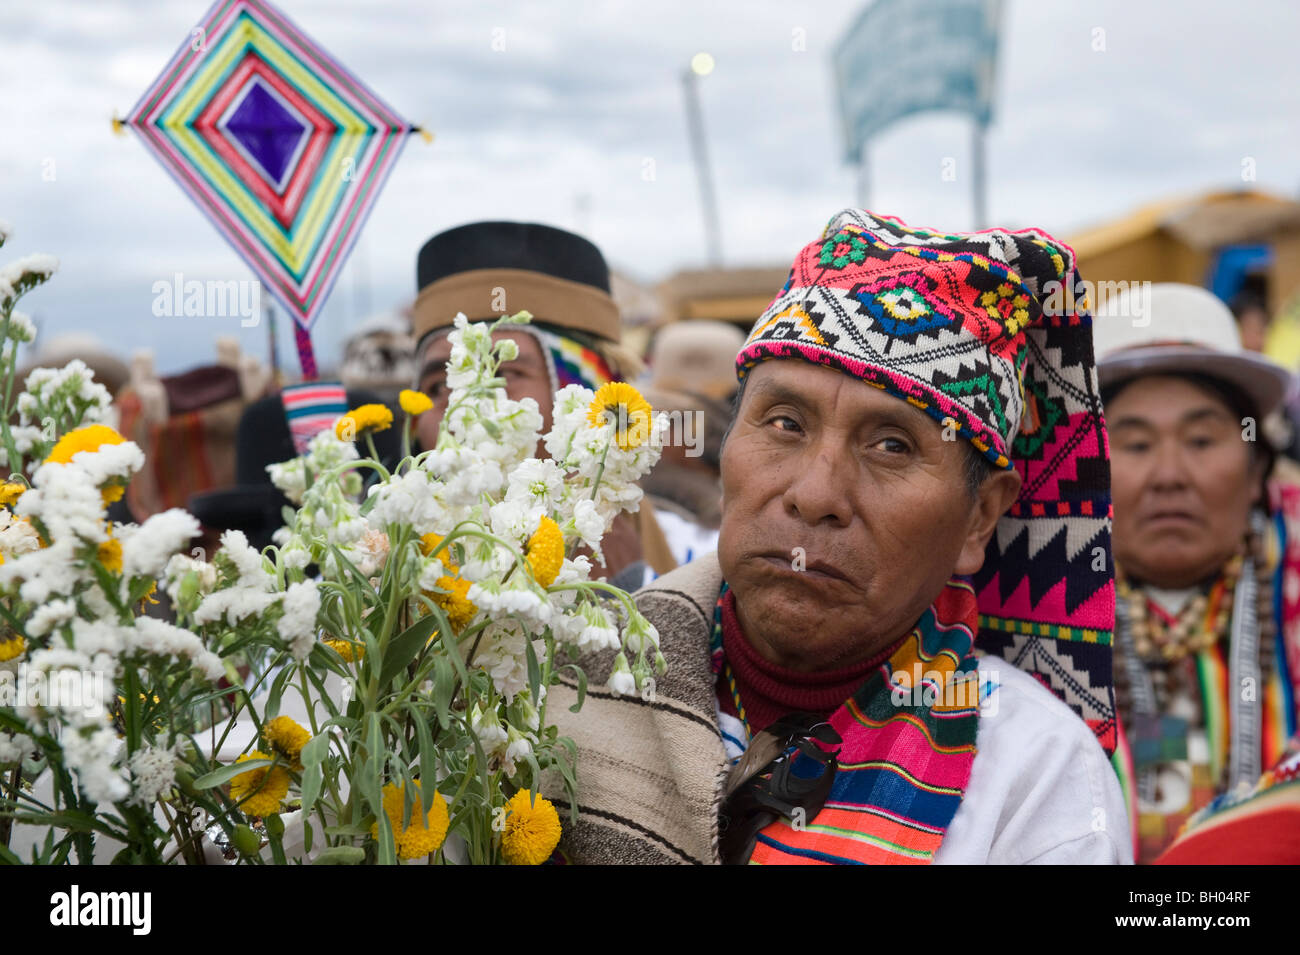 Un homme avec des costumes traditionnels de l'aymara, cérémonie du président Evo Morales en Bolivie, l'hypothèse de Tiwanaku. Banque D'Images